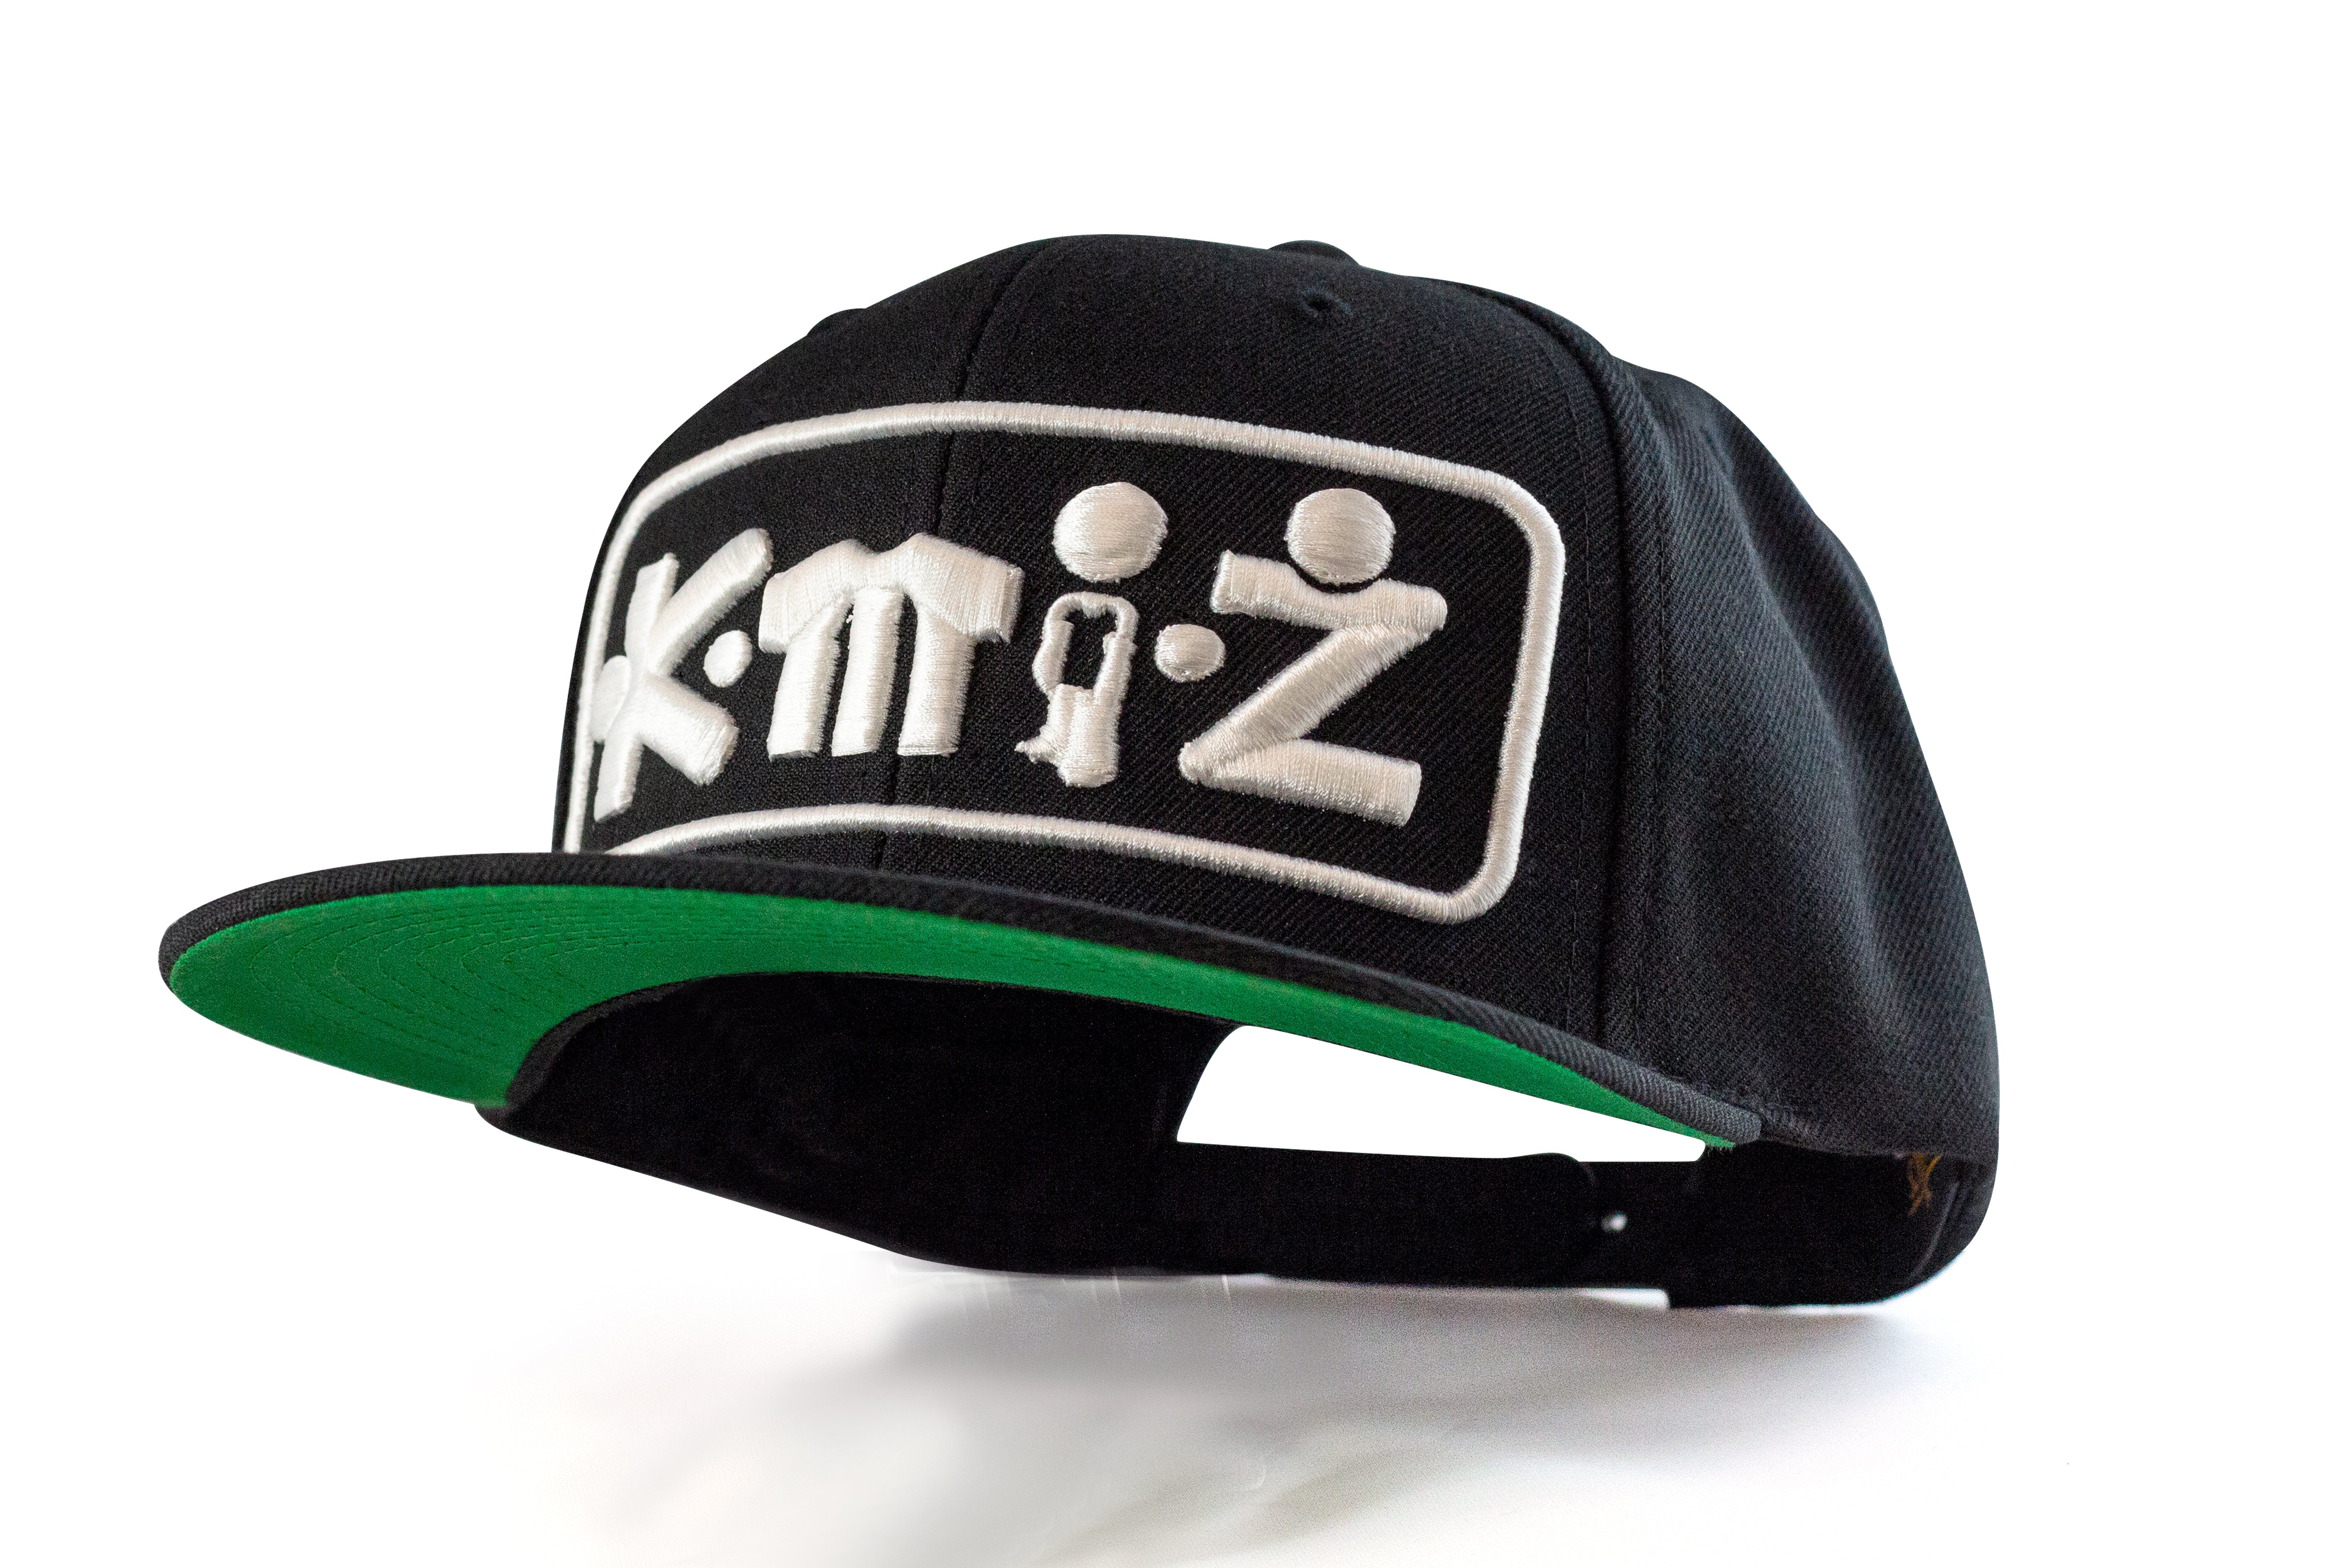 k-mi-z Medium Profile Adjustable Snapback Hat | k-mi-z.com – K-MI-Z APPAREL